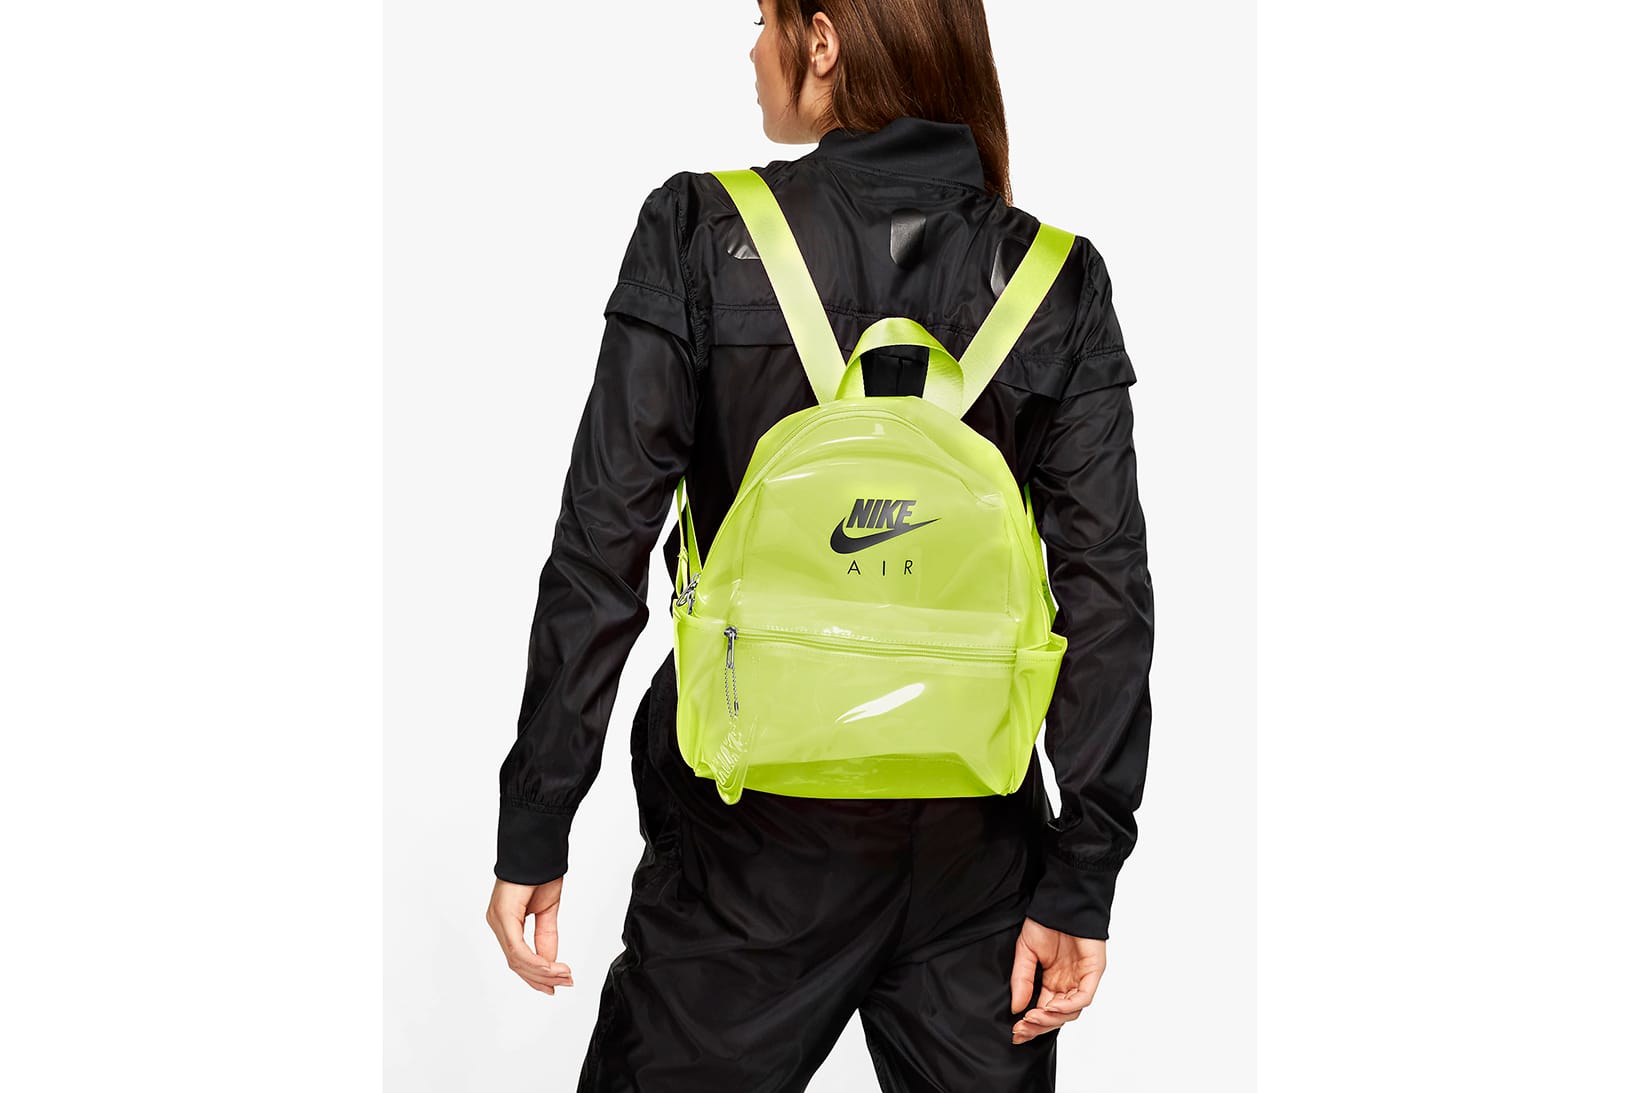 nike air backpack green